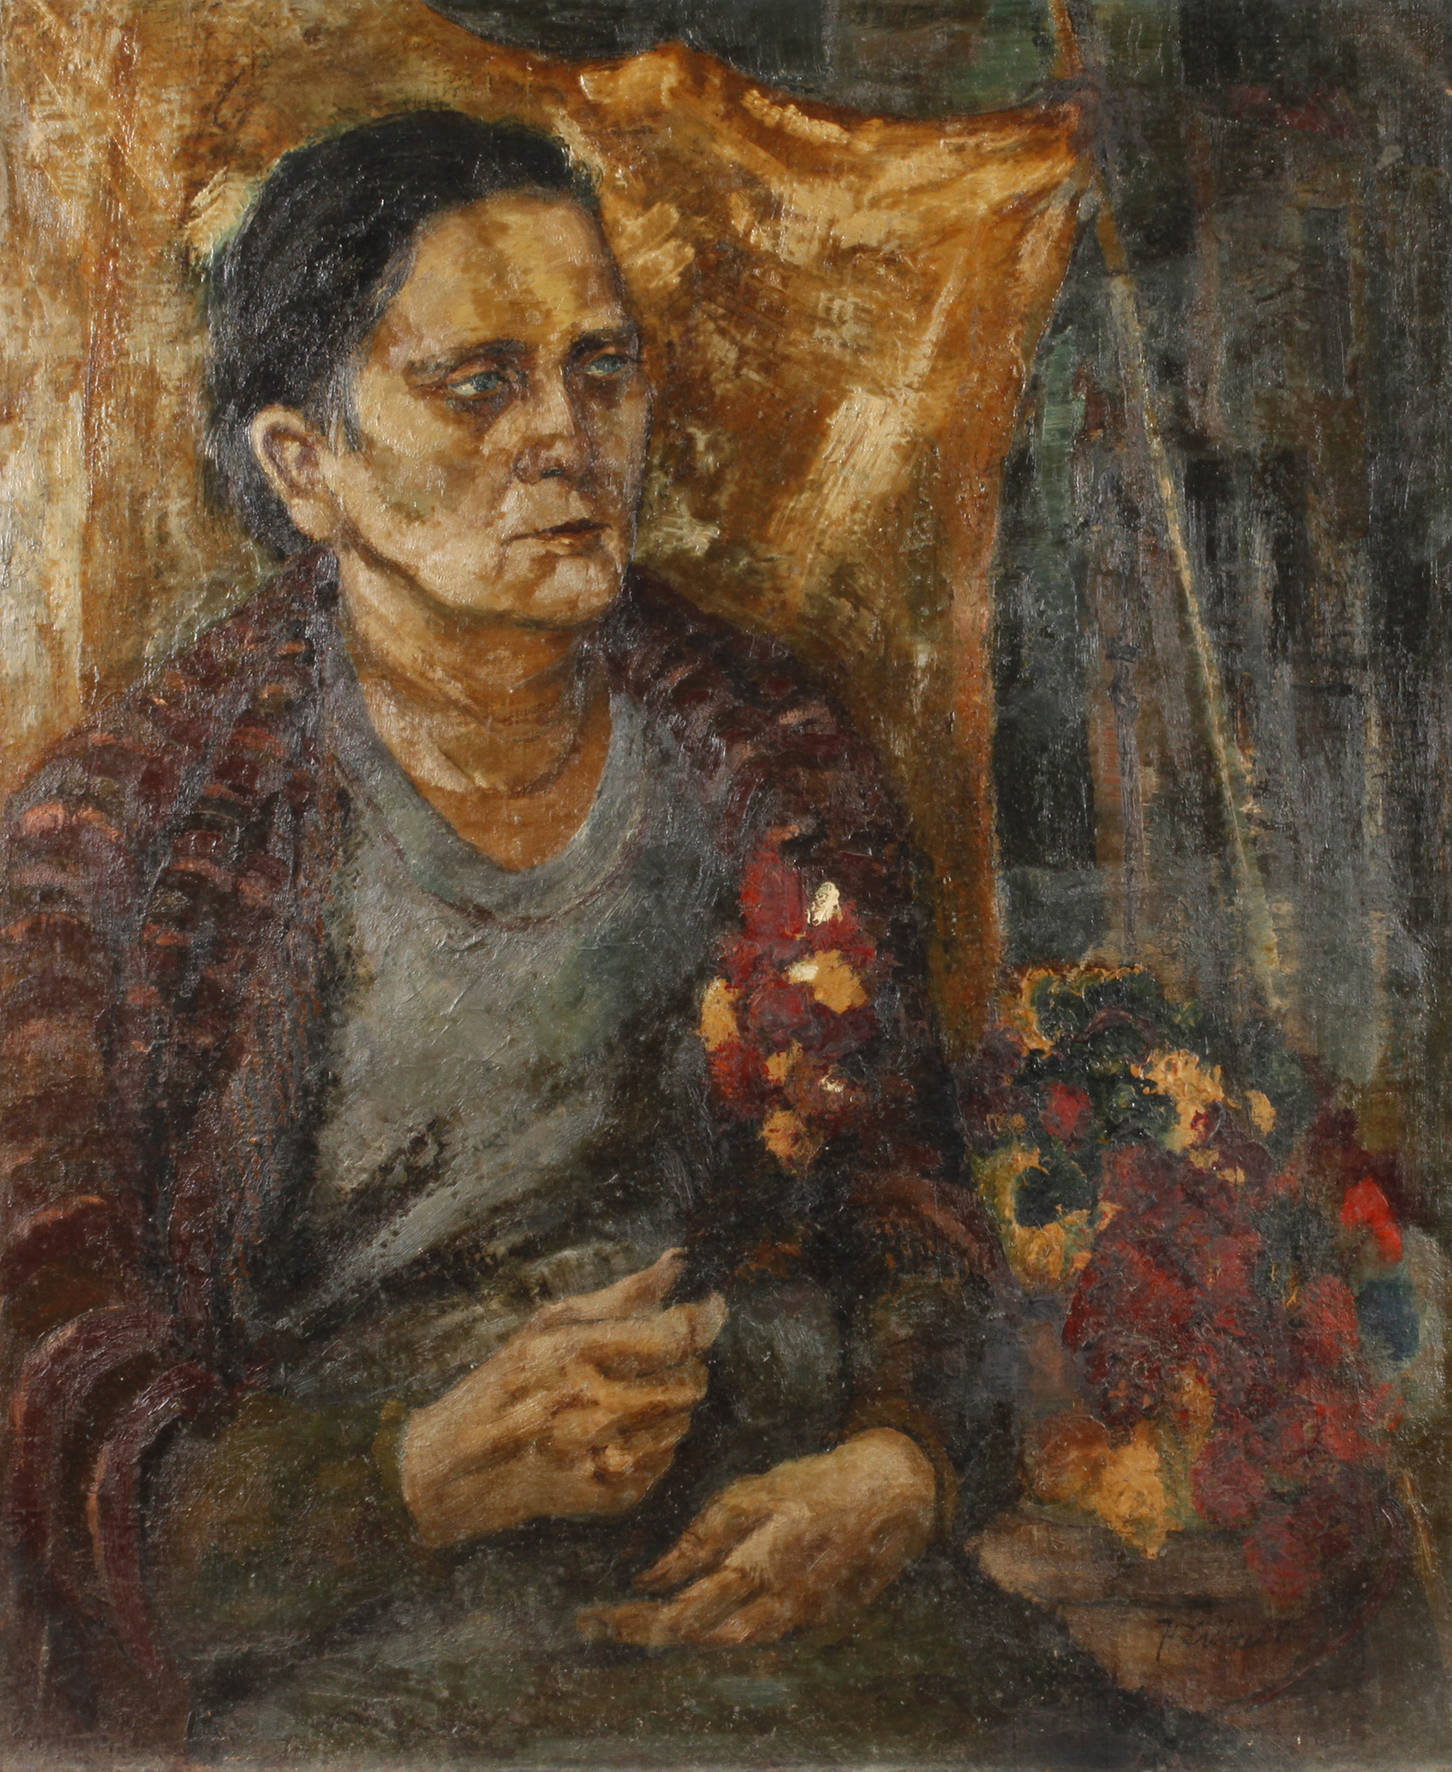 Heinrich Siebald, Blumenverkäuferin